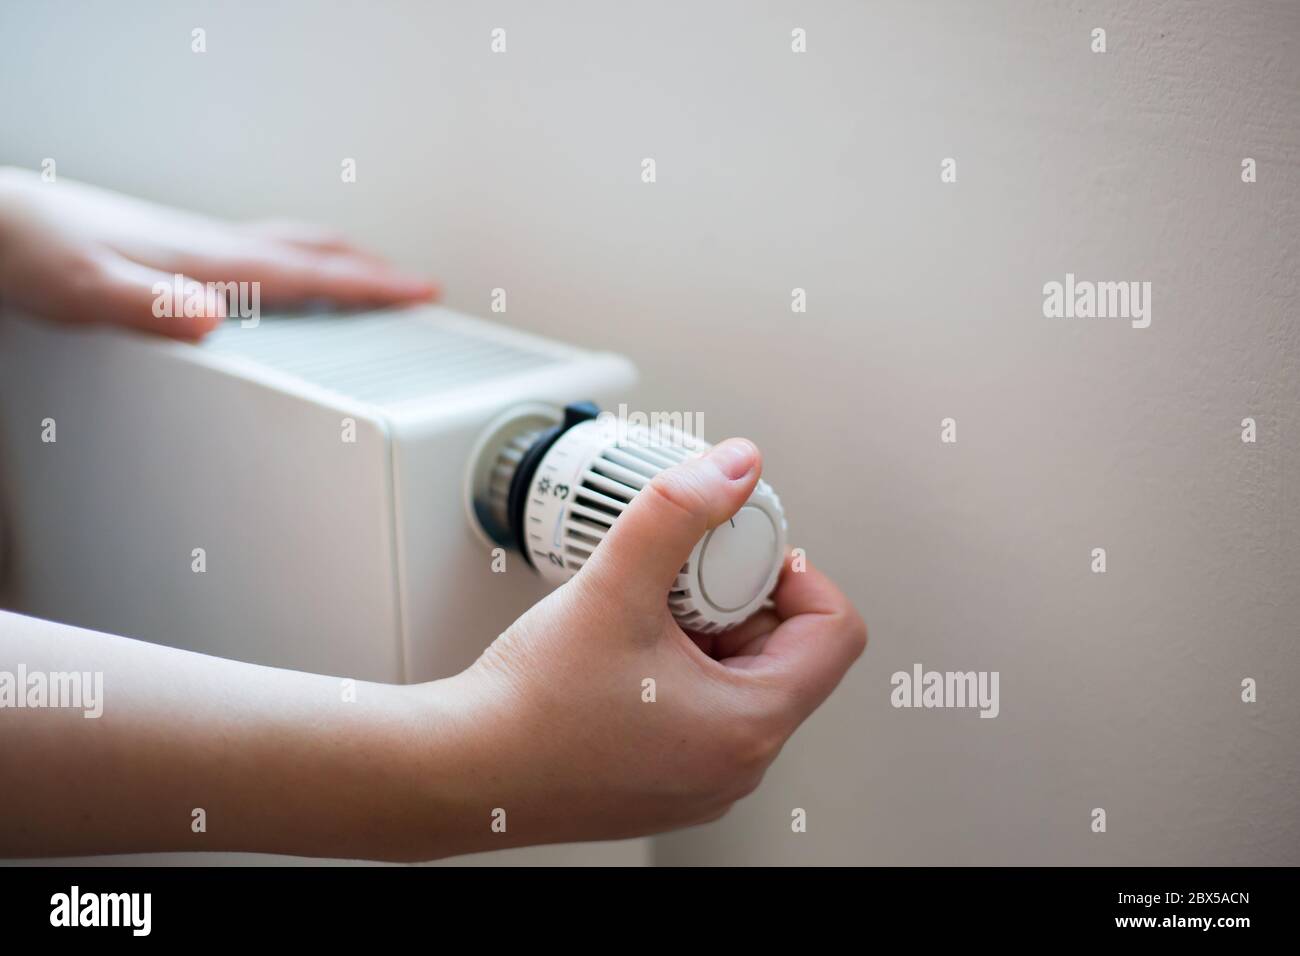 Donna che modifica la temperatura sul radiatore mediante il controller della temperatura, aumenta o diminuisce il prezzo del riscaldamento Foto Stock